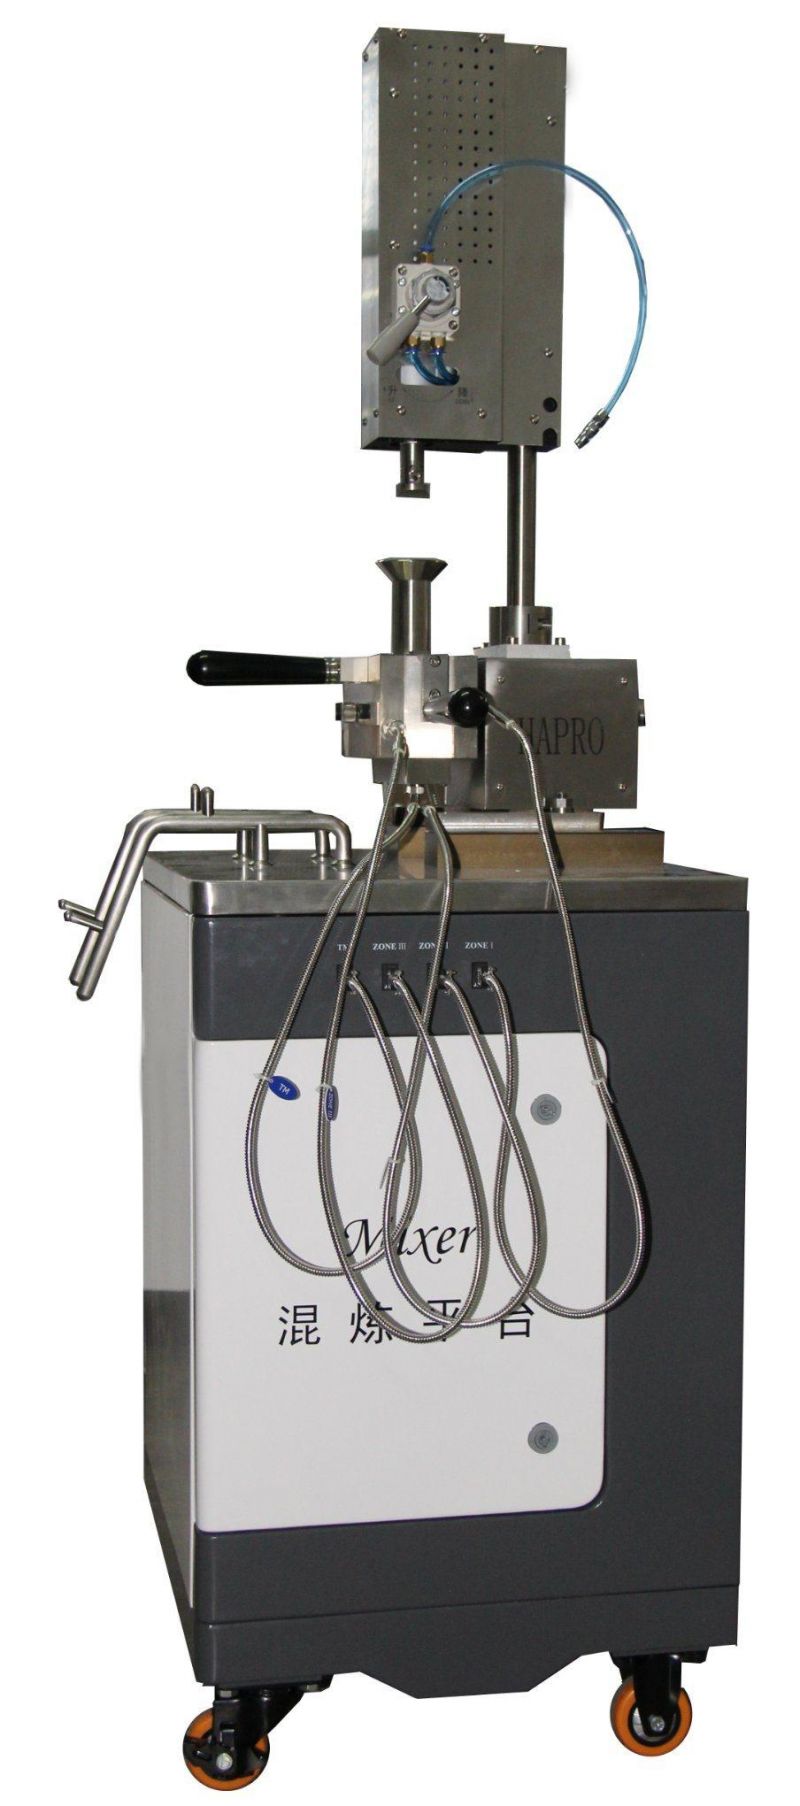 Test Chambers of Laboratory Universal Mixer Testing Equipment